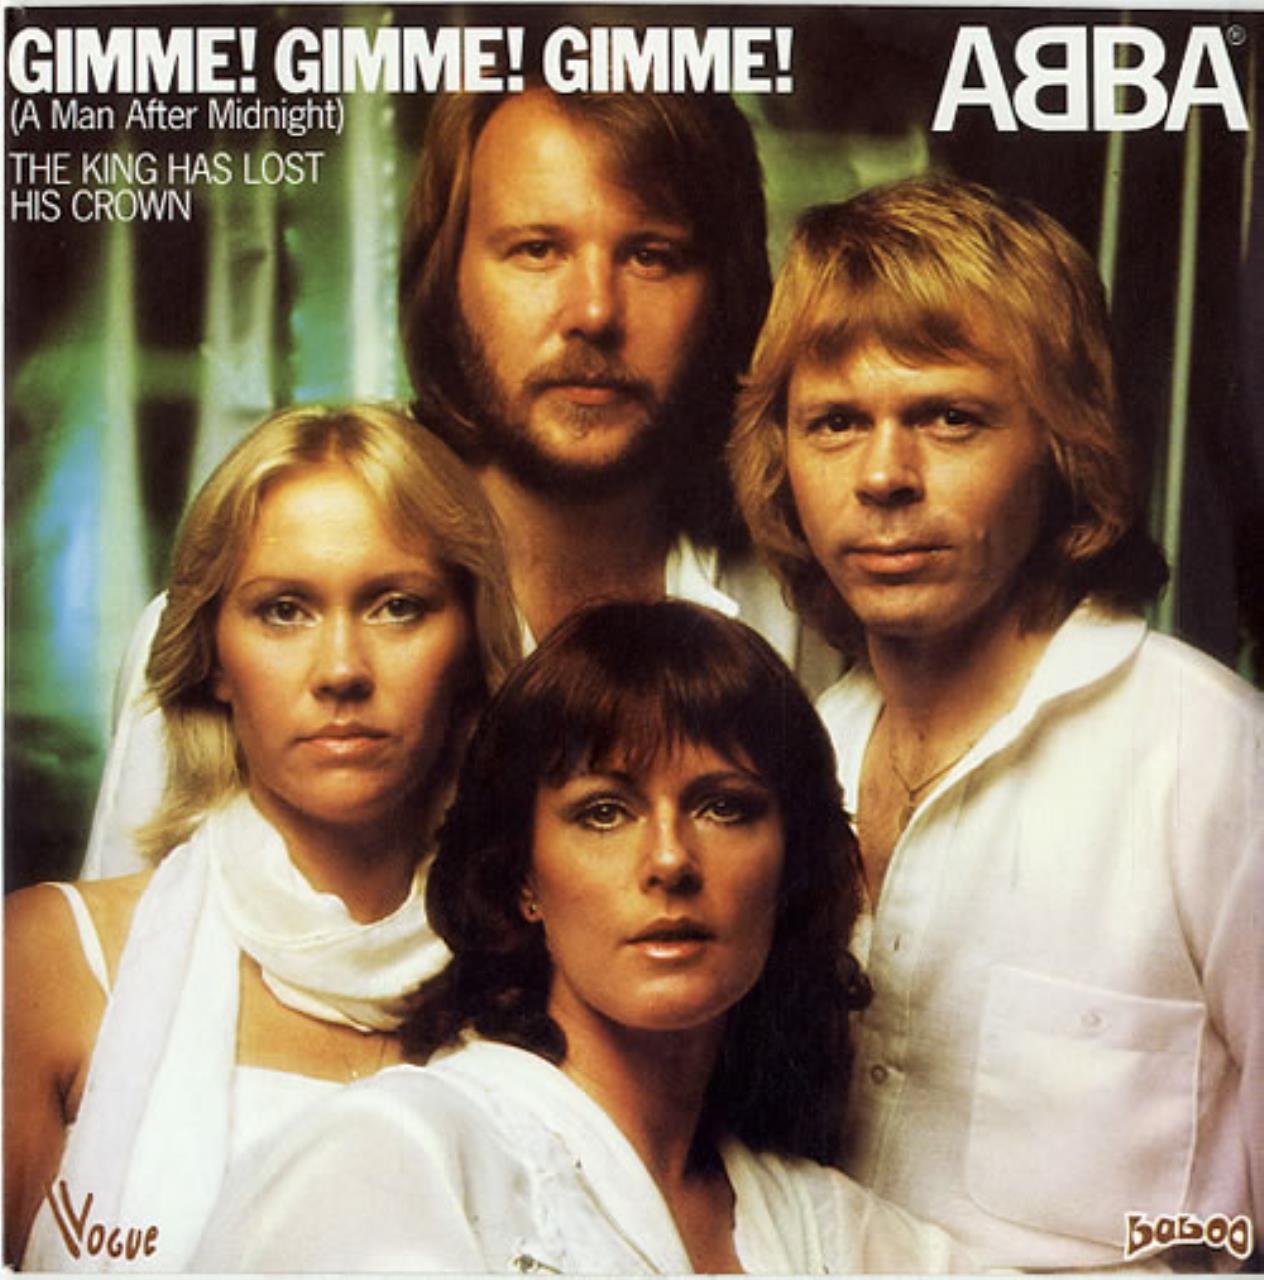 Abba – Gimme! Gimme! Gimme! (A Man After Midnight)